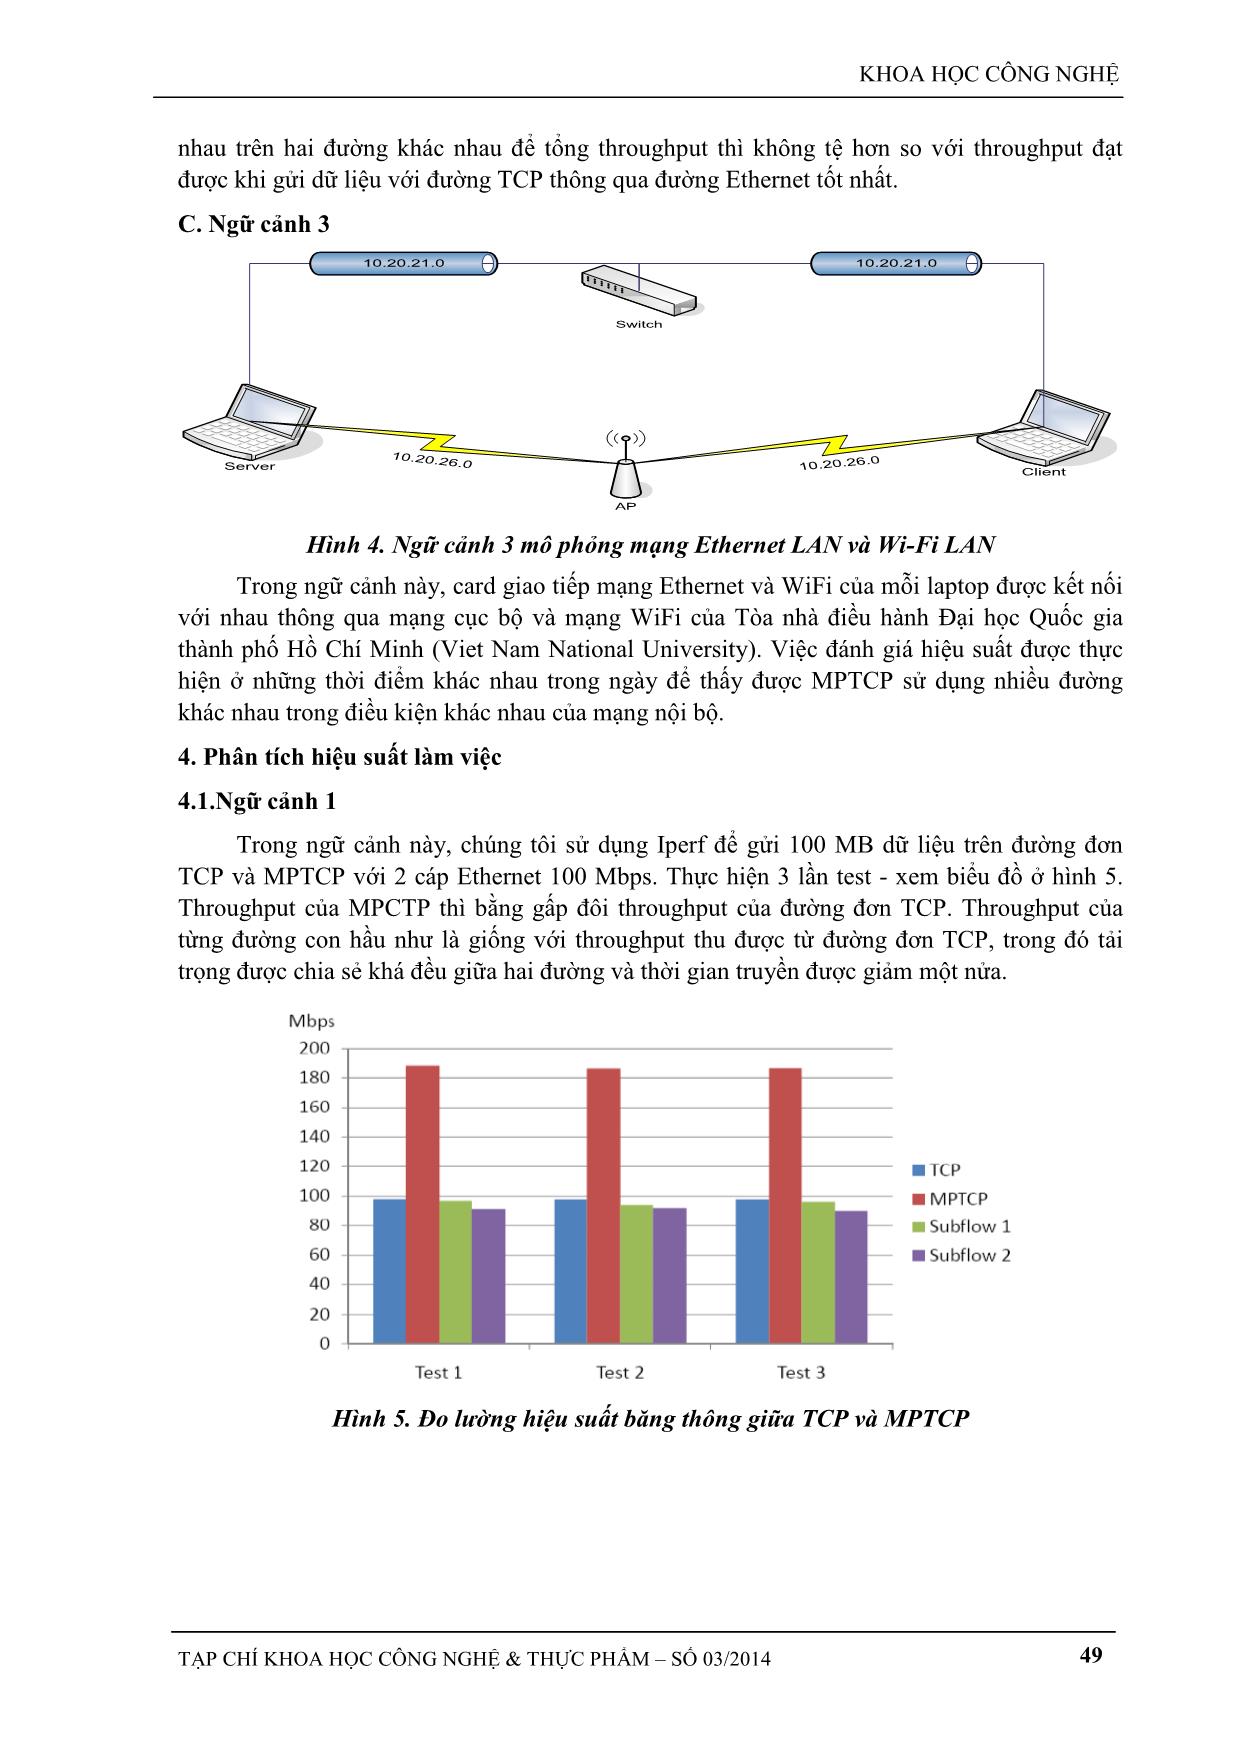 Đo lường, phân tích và đánh giá băng thông của giao thức đa đường TCP trang 4